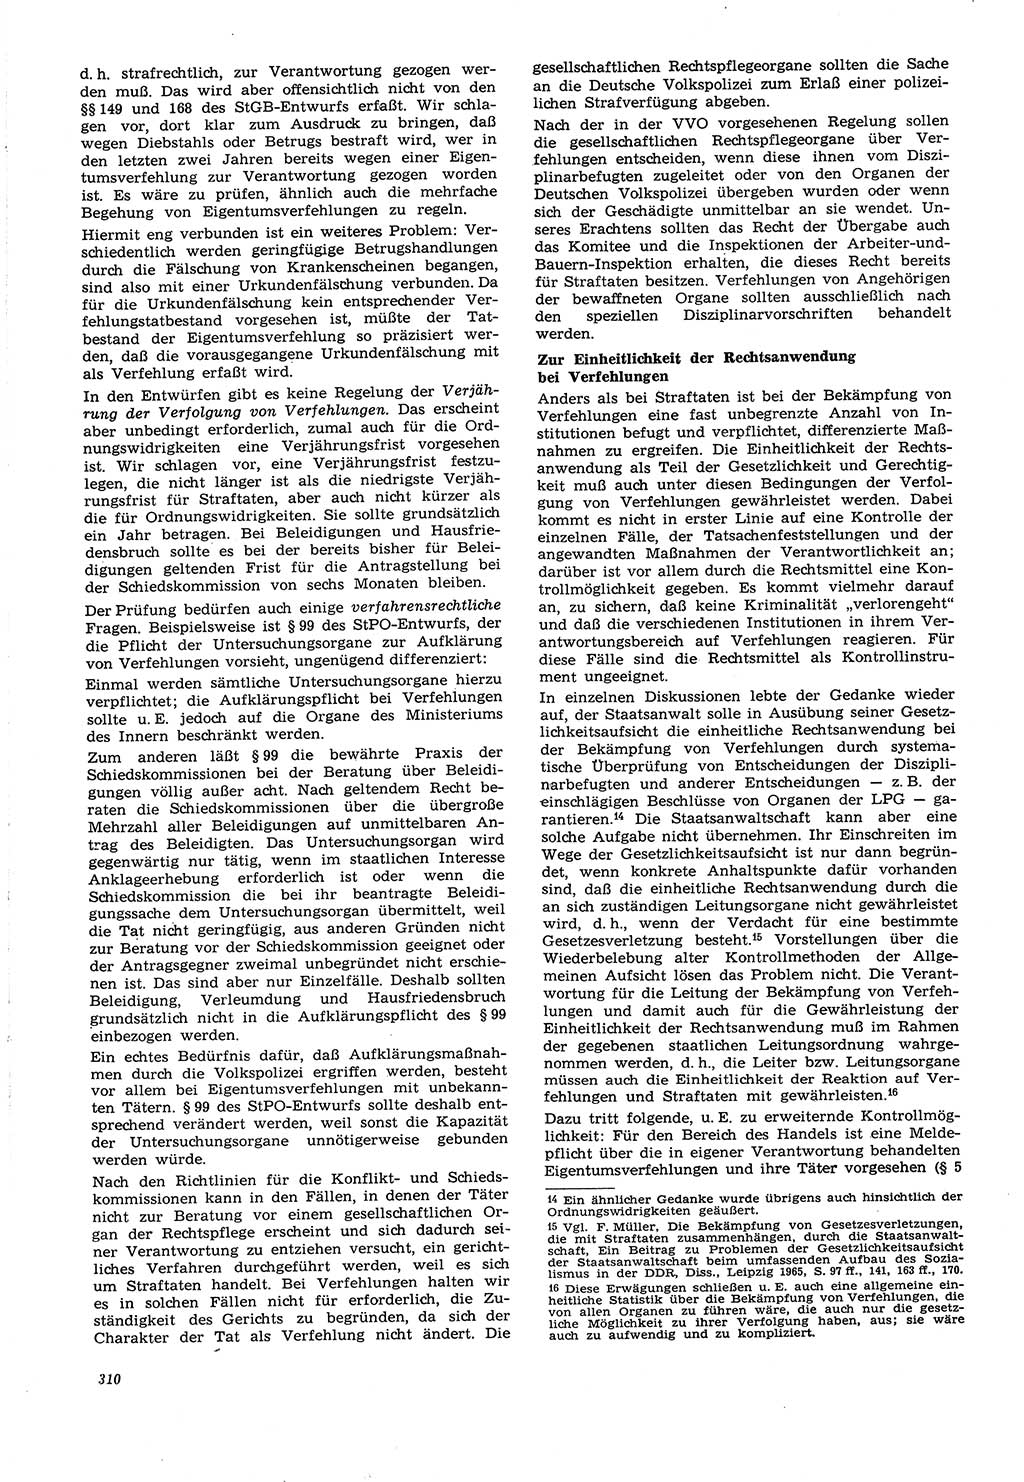 Neue Justiz (NJ), Zeitschrift für Recht und Rechtswissenschaft [Deutsche Demokratische Republik (DDR)], 21. Jahrgang 1967, Seite 310 (NJ DDR 1967, S. 310)